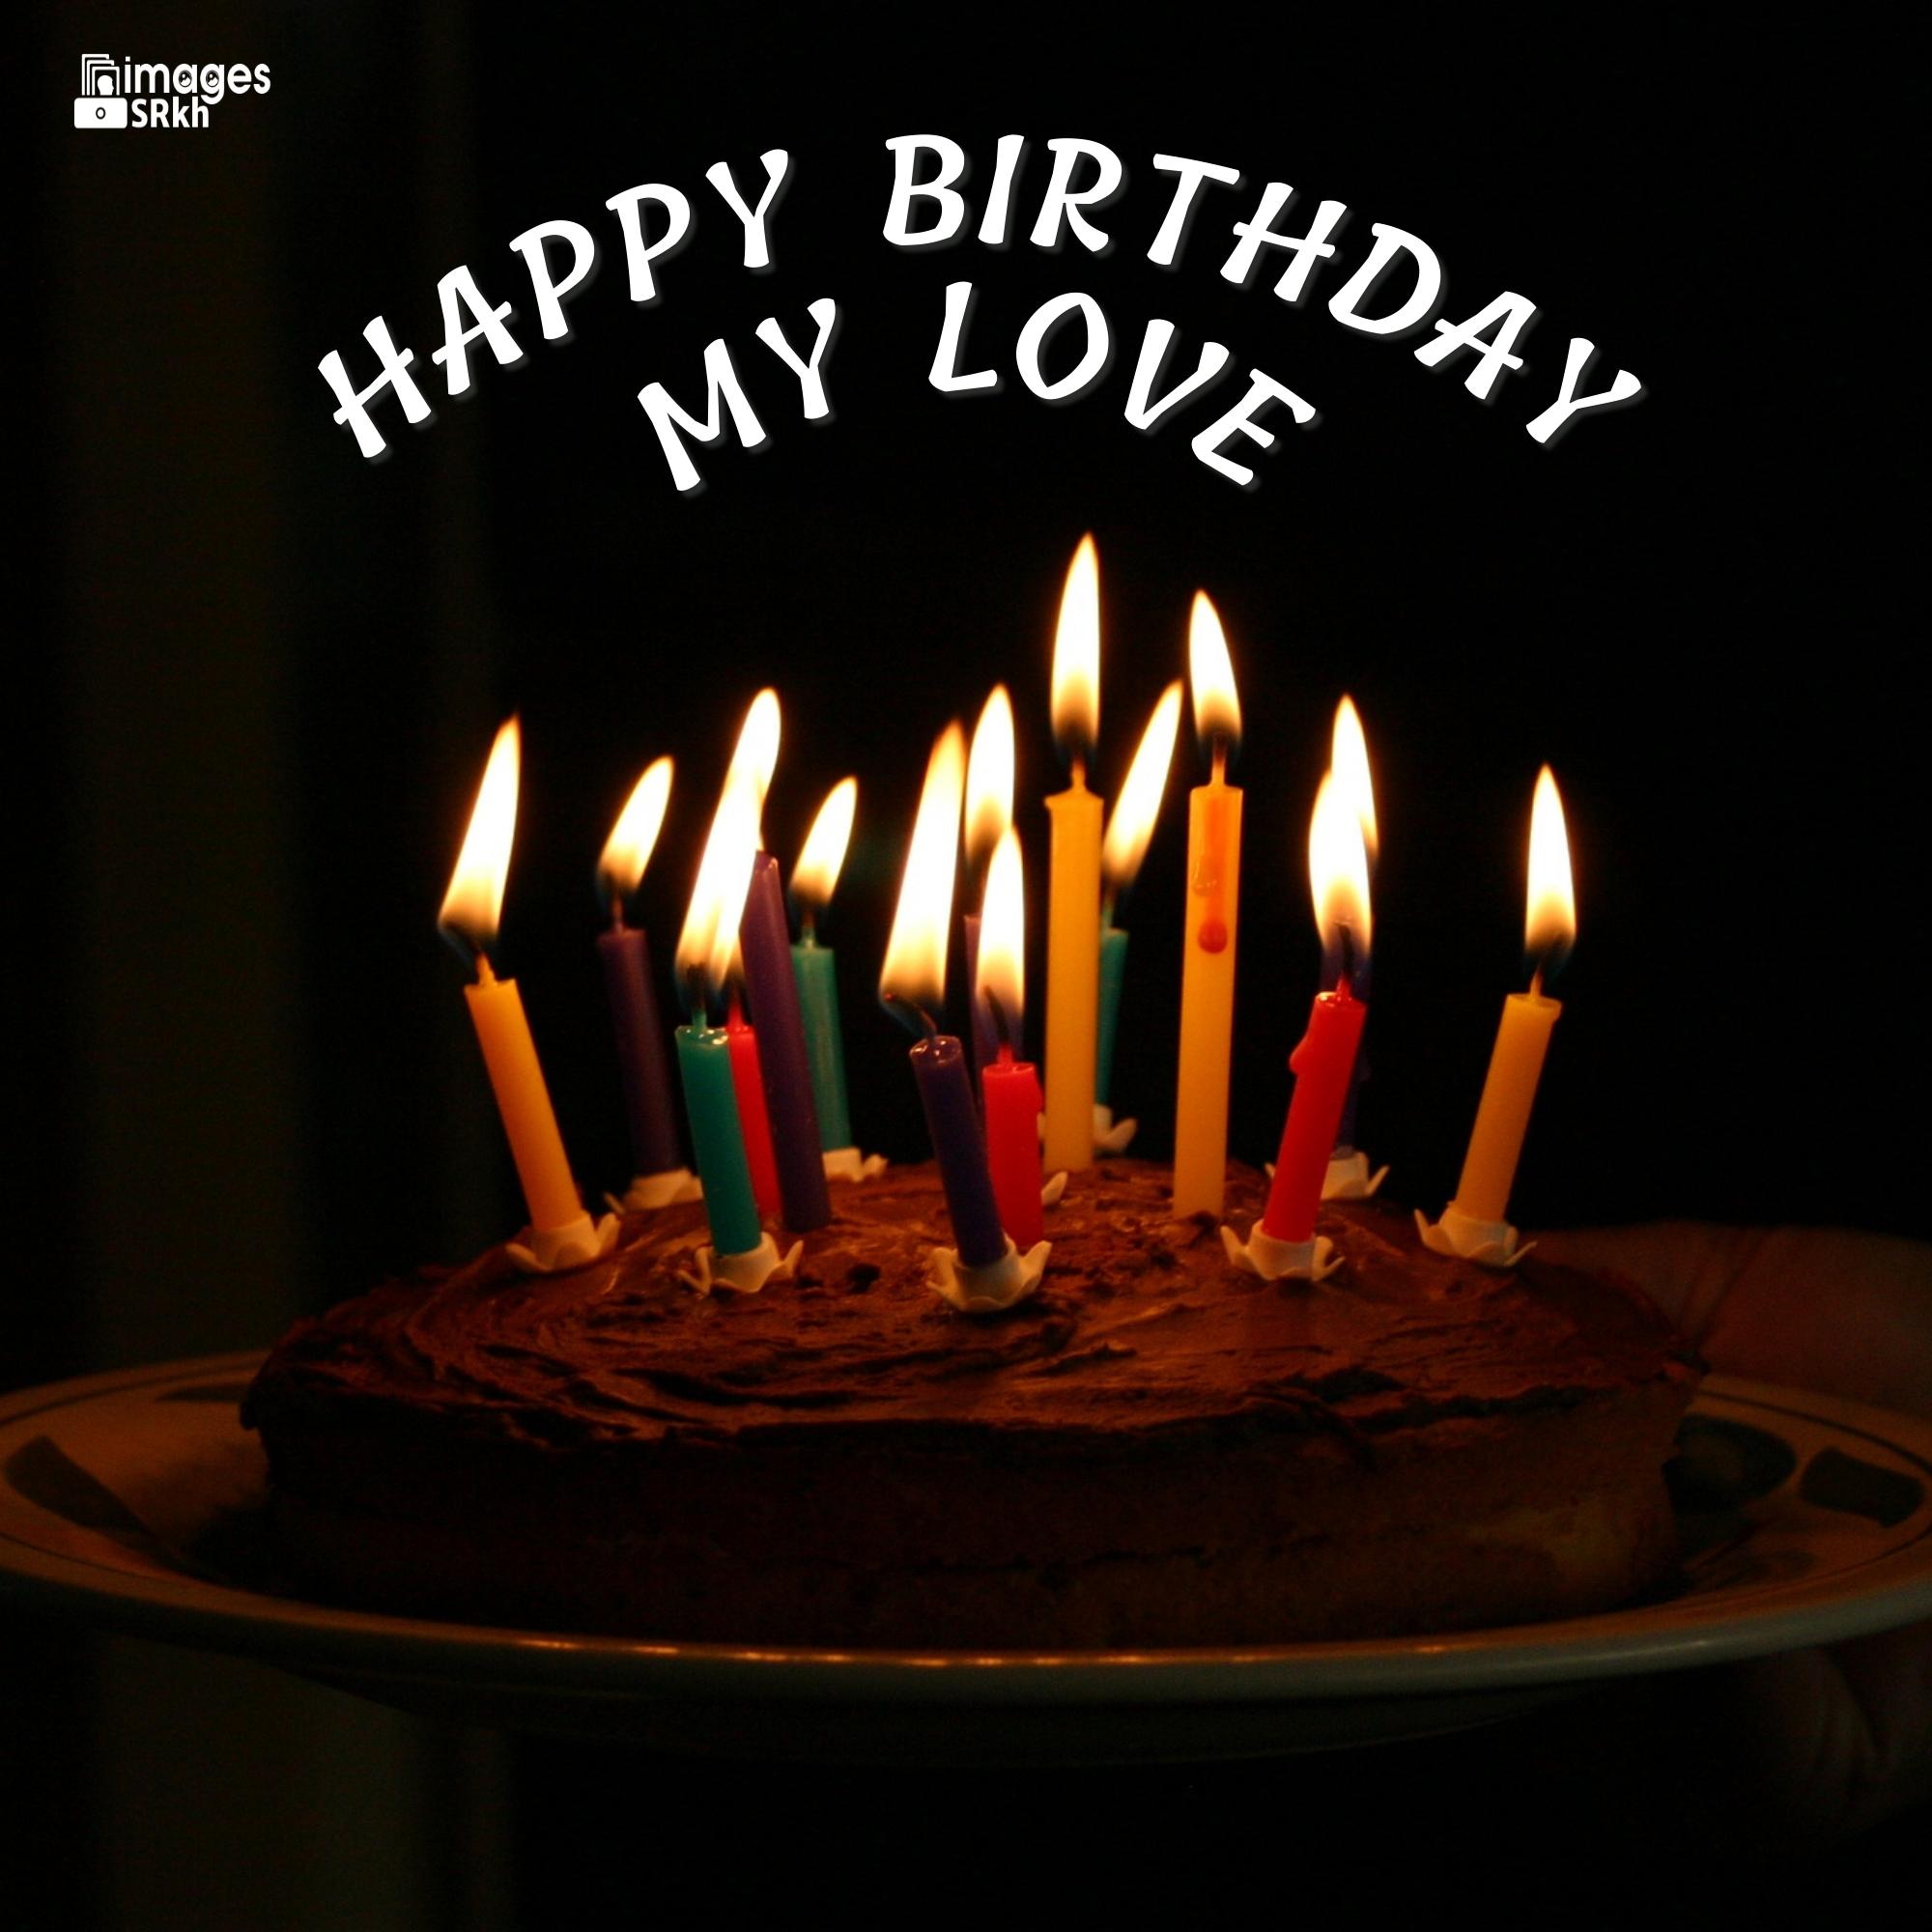 Love Happy Birthday Images Premium Qulity